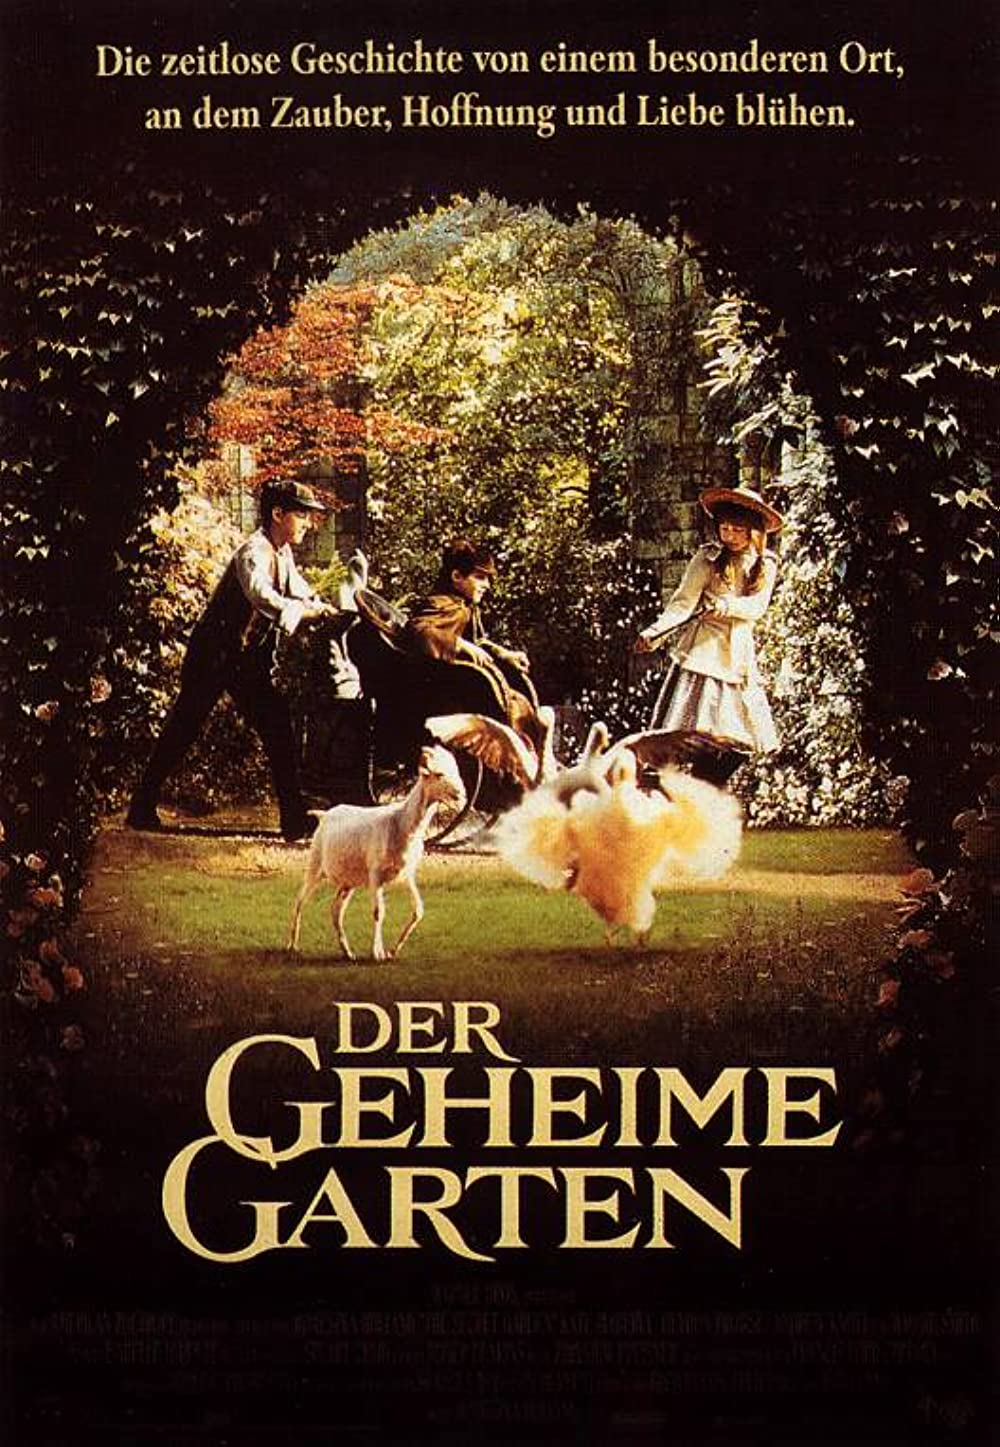 Der geheime Garten (1993)